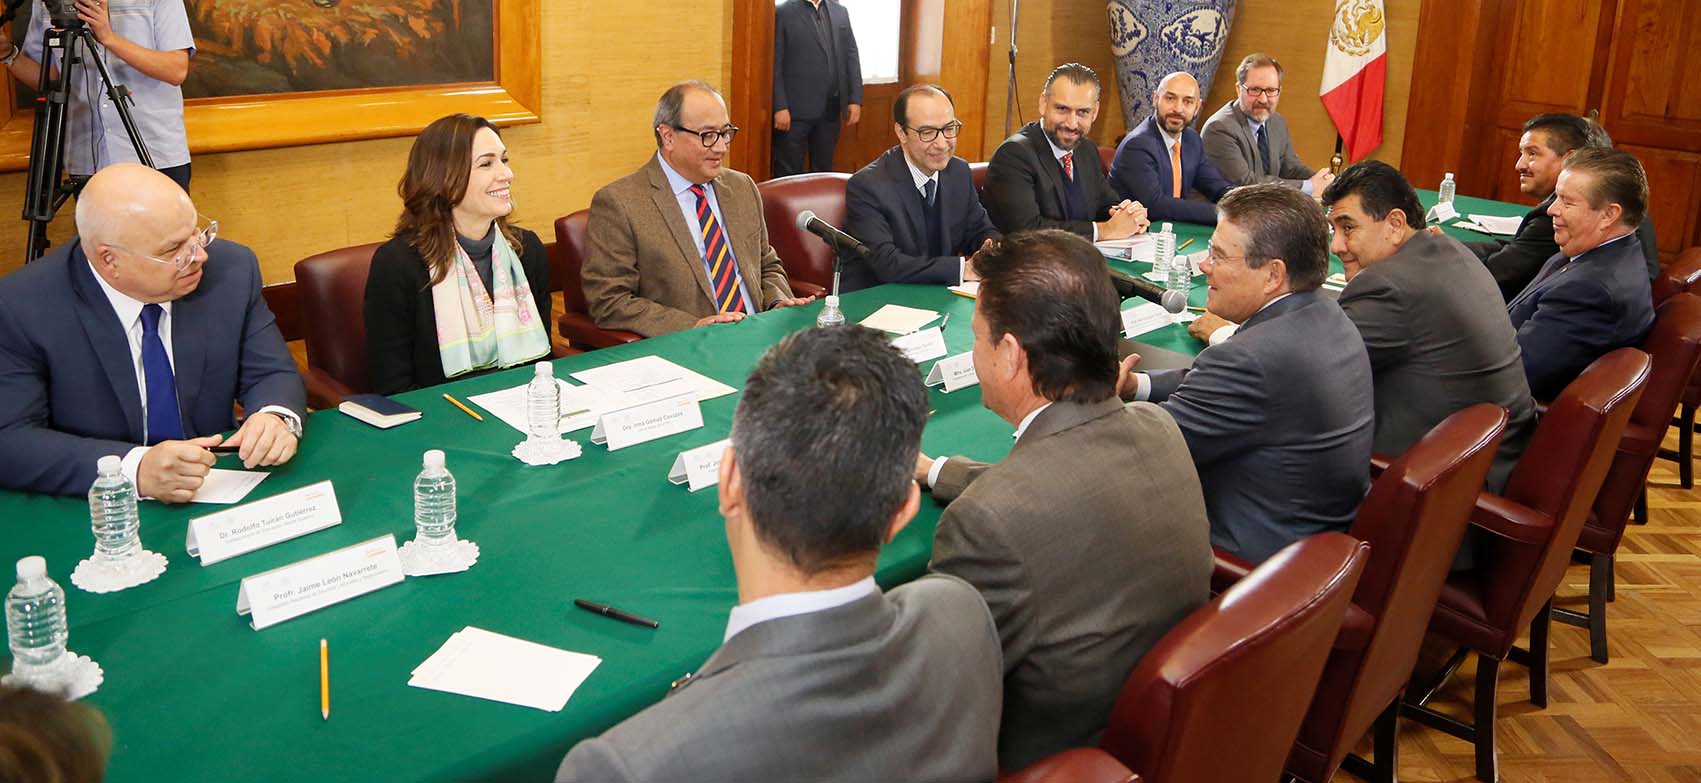 Photo of La SEP y el SNTE inician negociación del Pliego Nacional de Demandas 2018